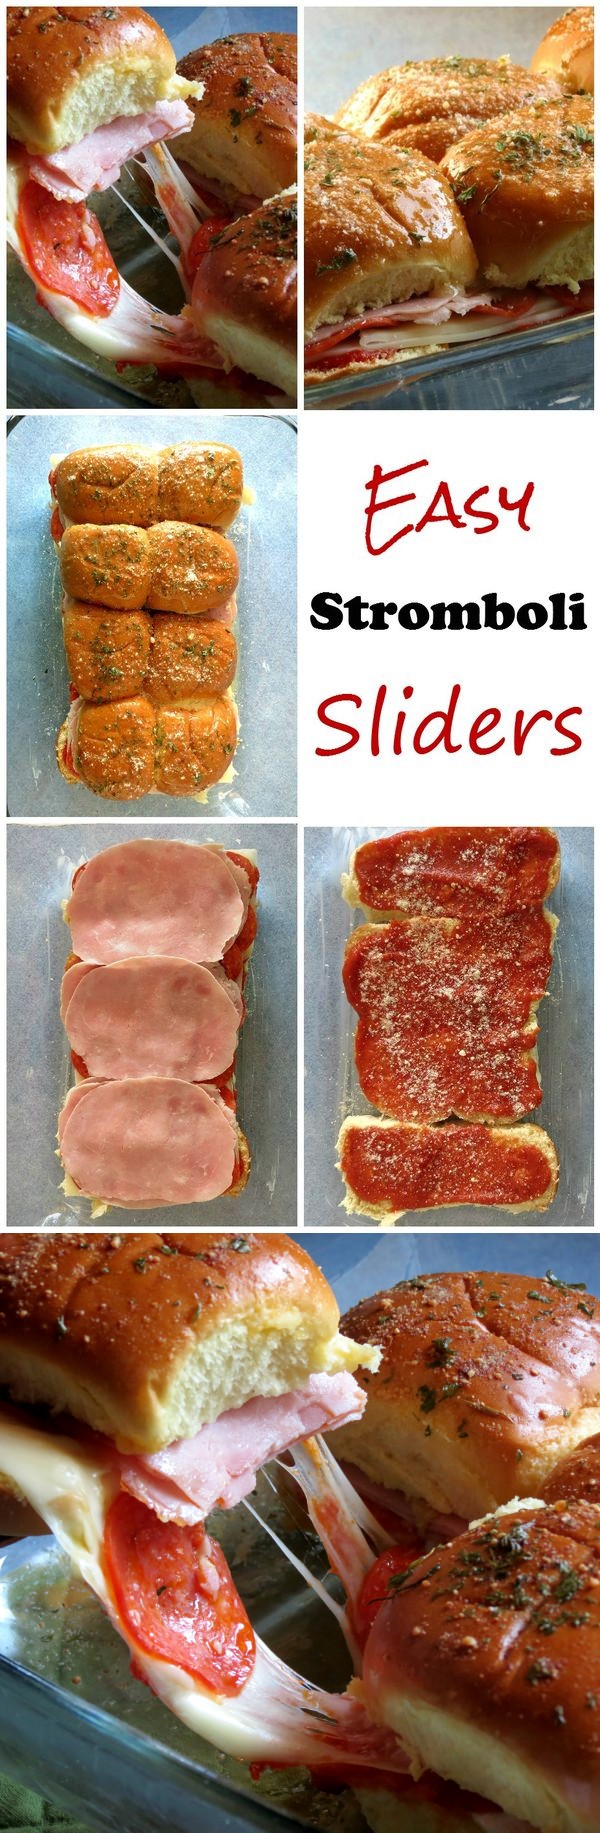 Easy Stromboli Sliders